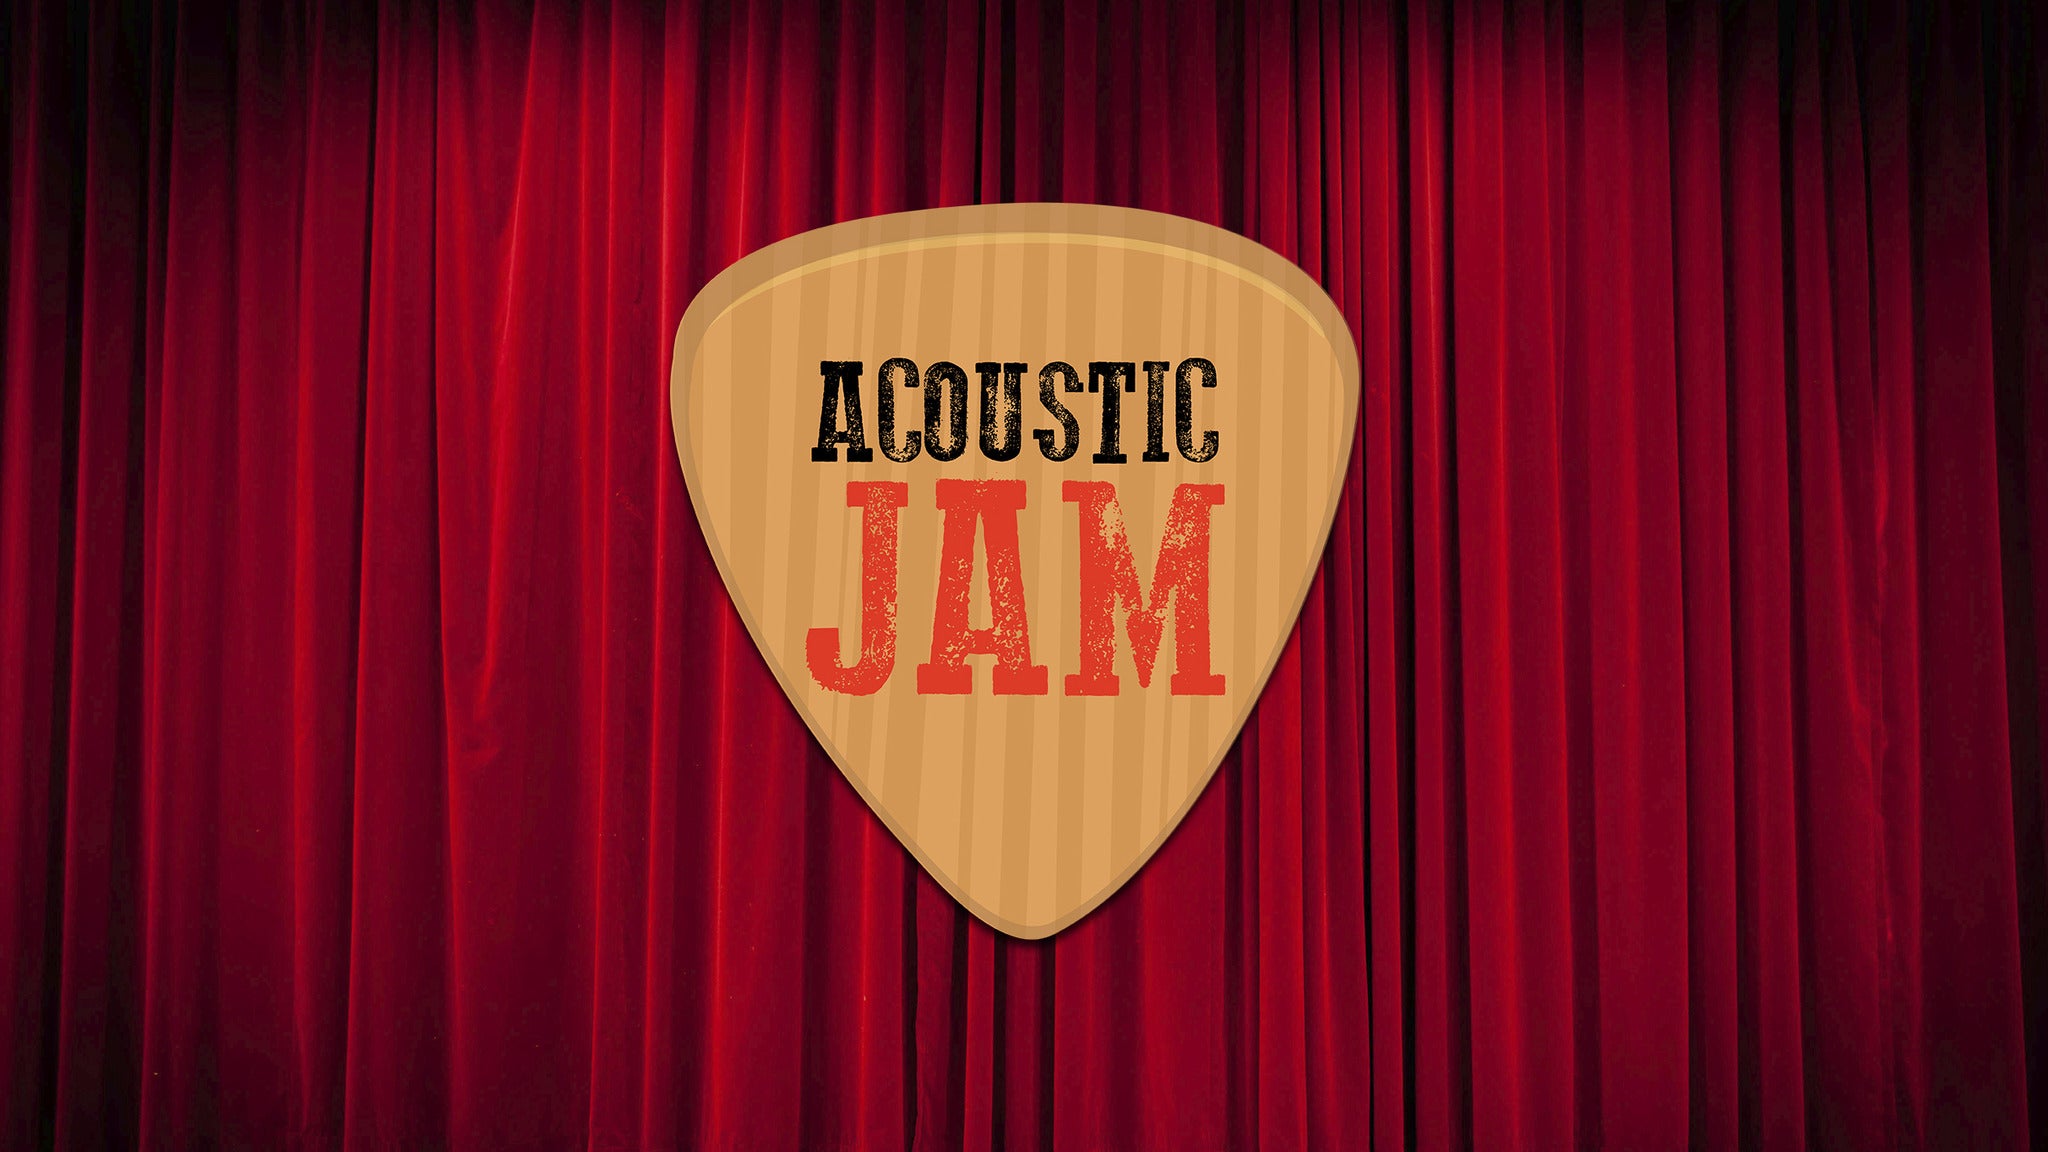 exclusive presale code for Acoustic Jam Lexington presale tickets in Lexington